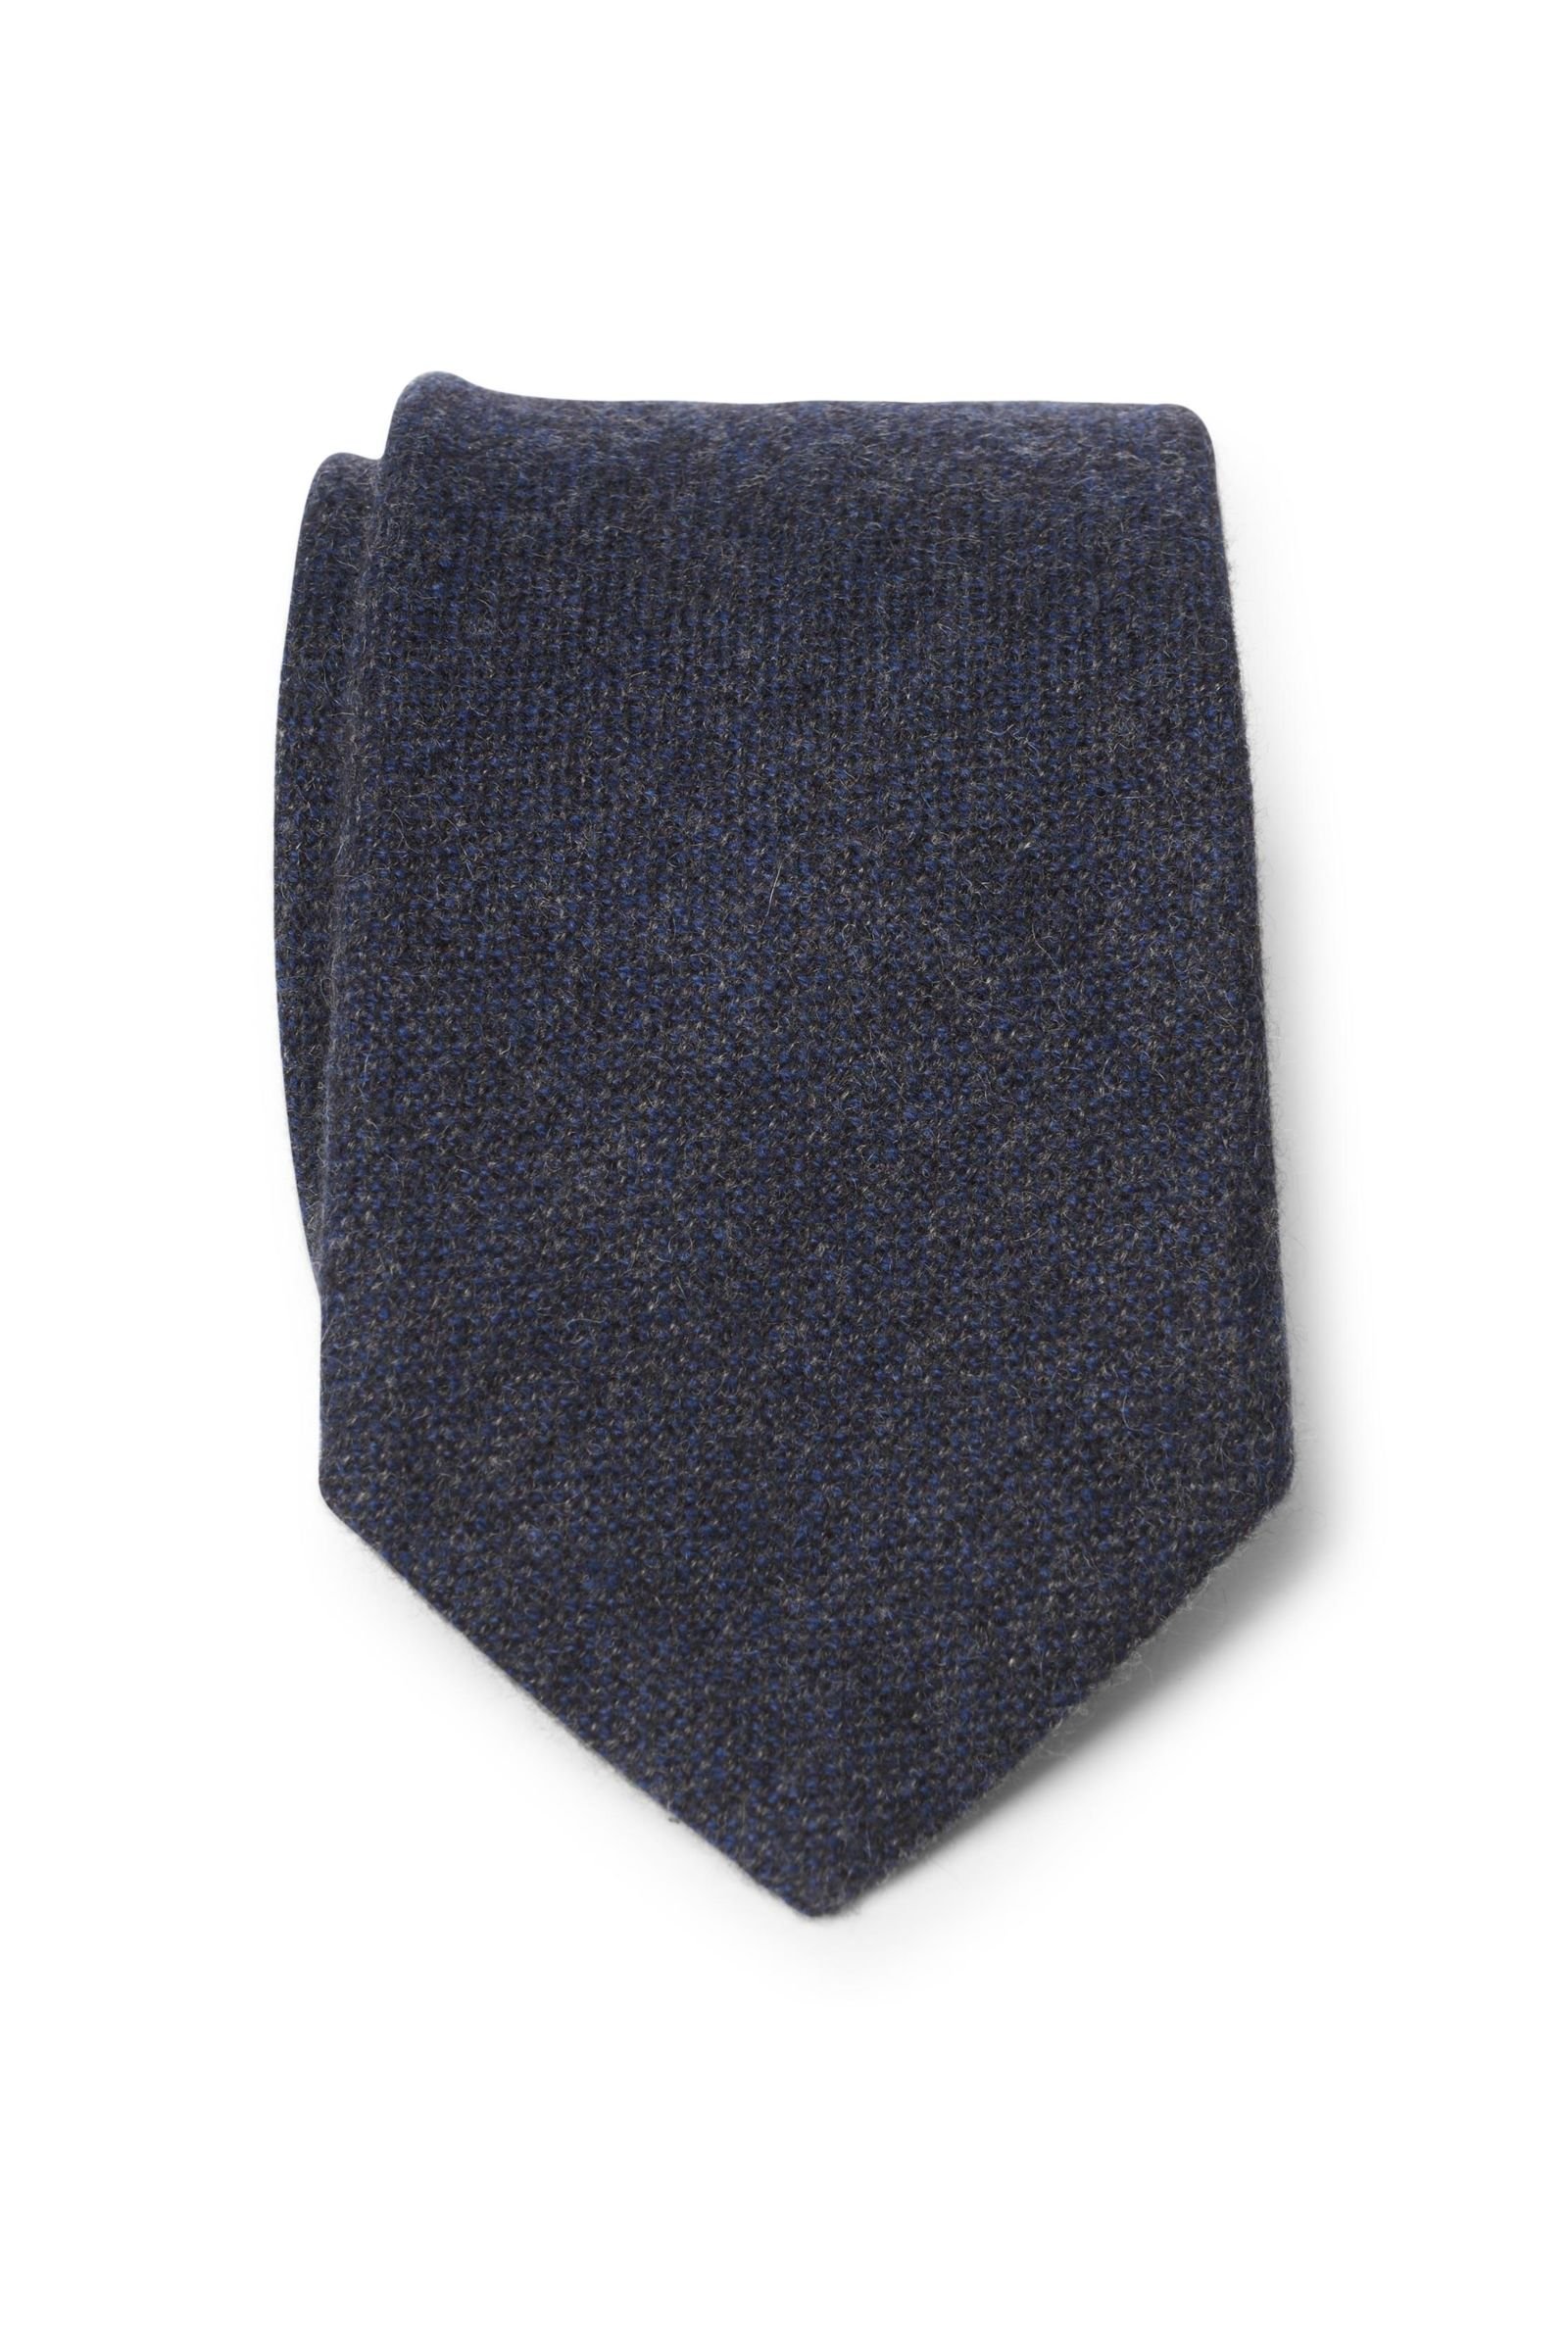 Cashmere tie navy/grey